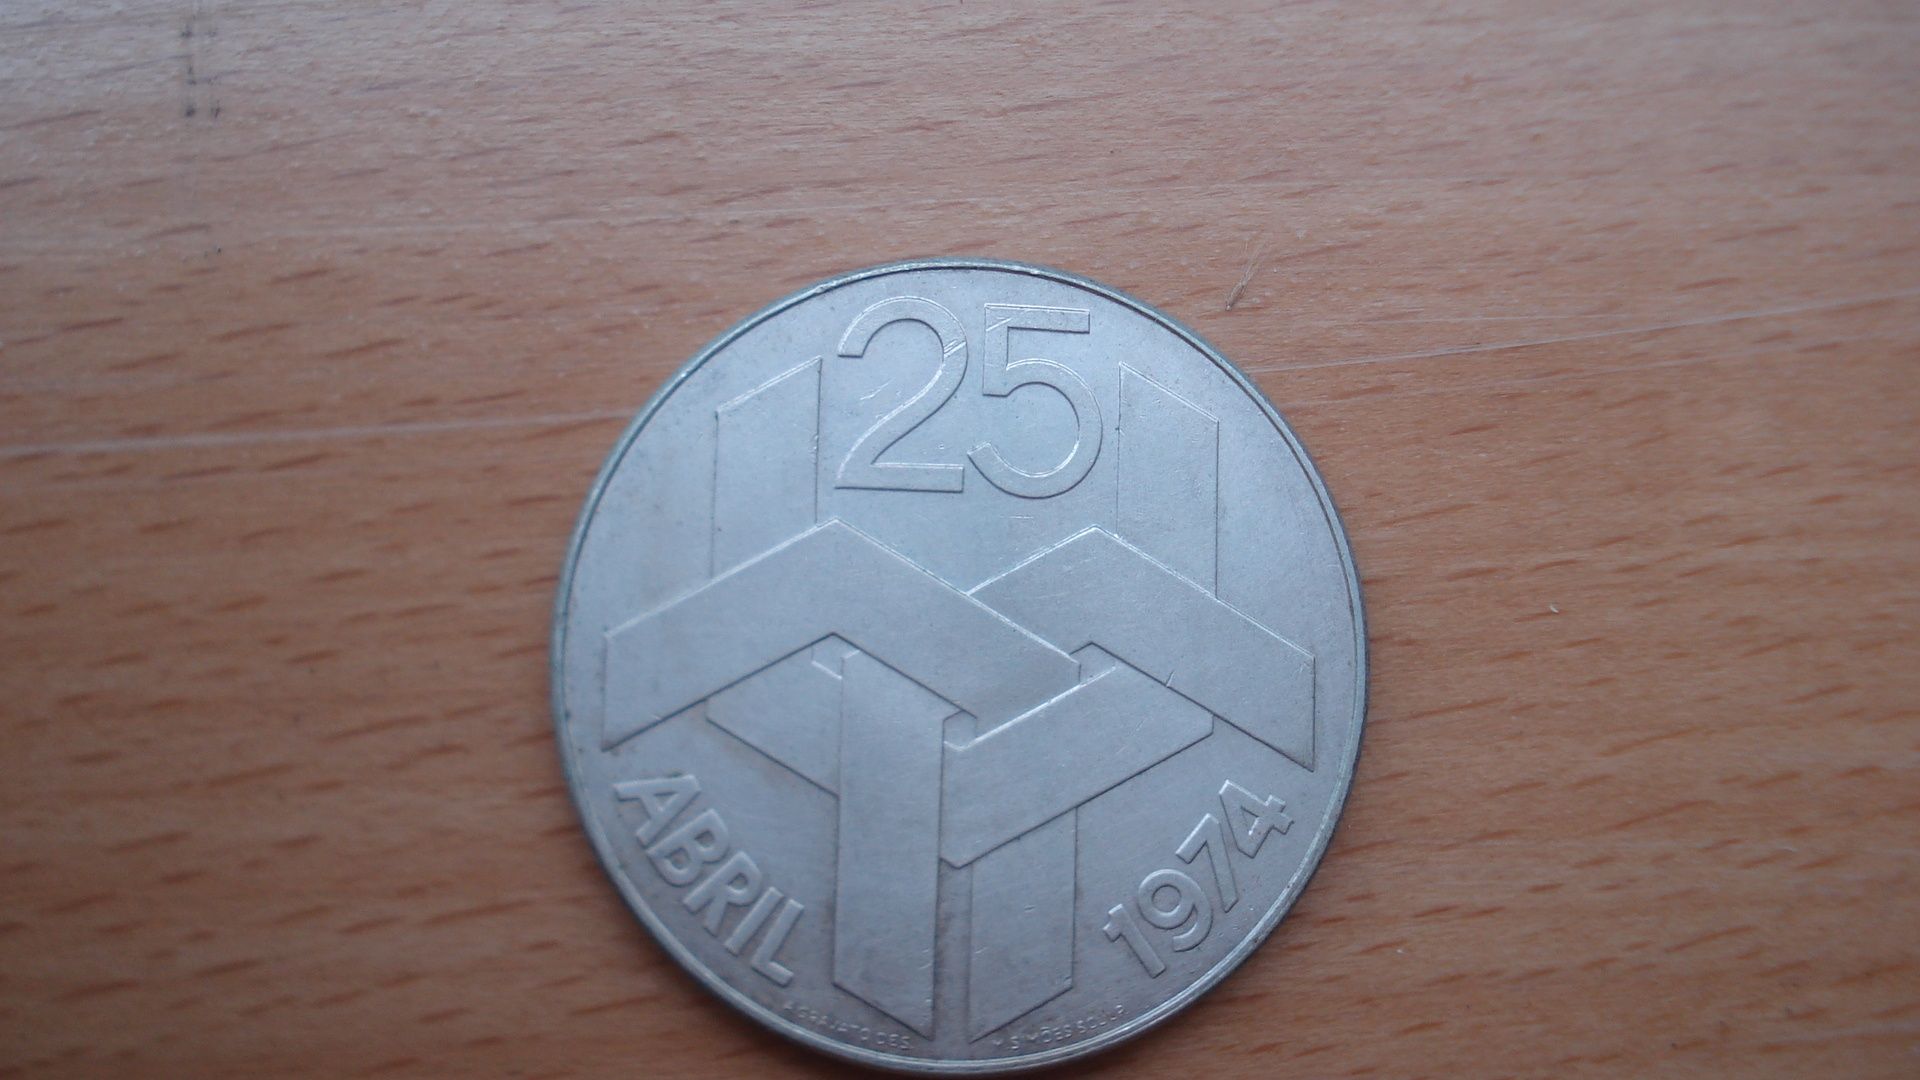 Moedas prata 25 abril 1974 e 10 euro